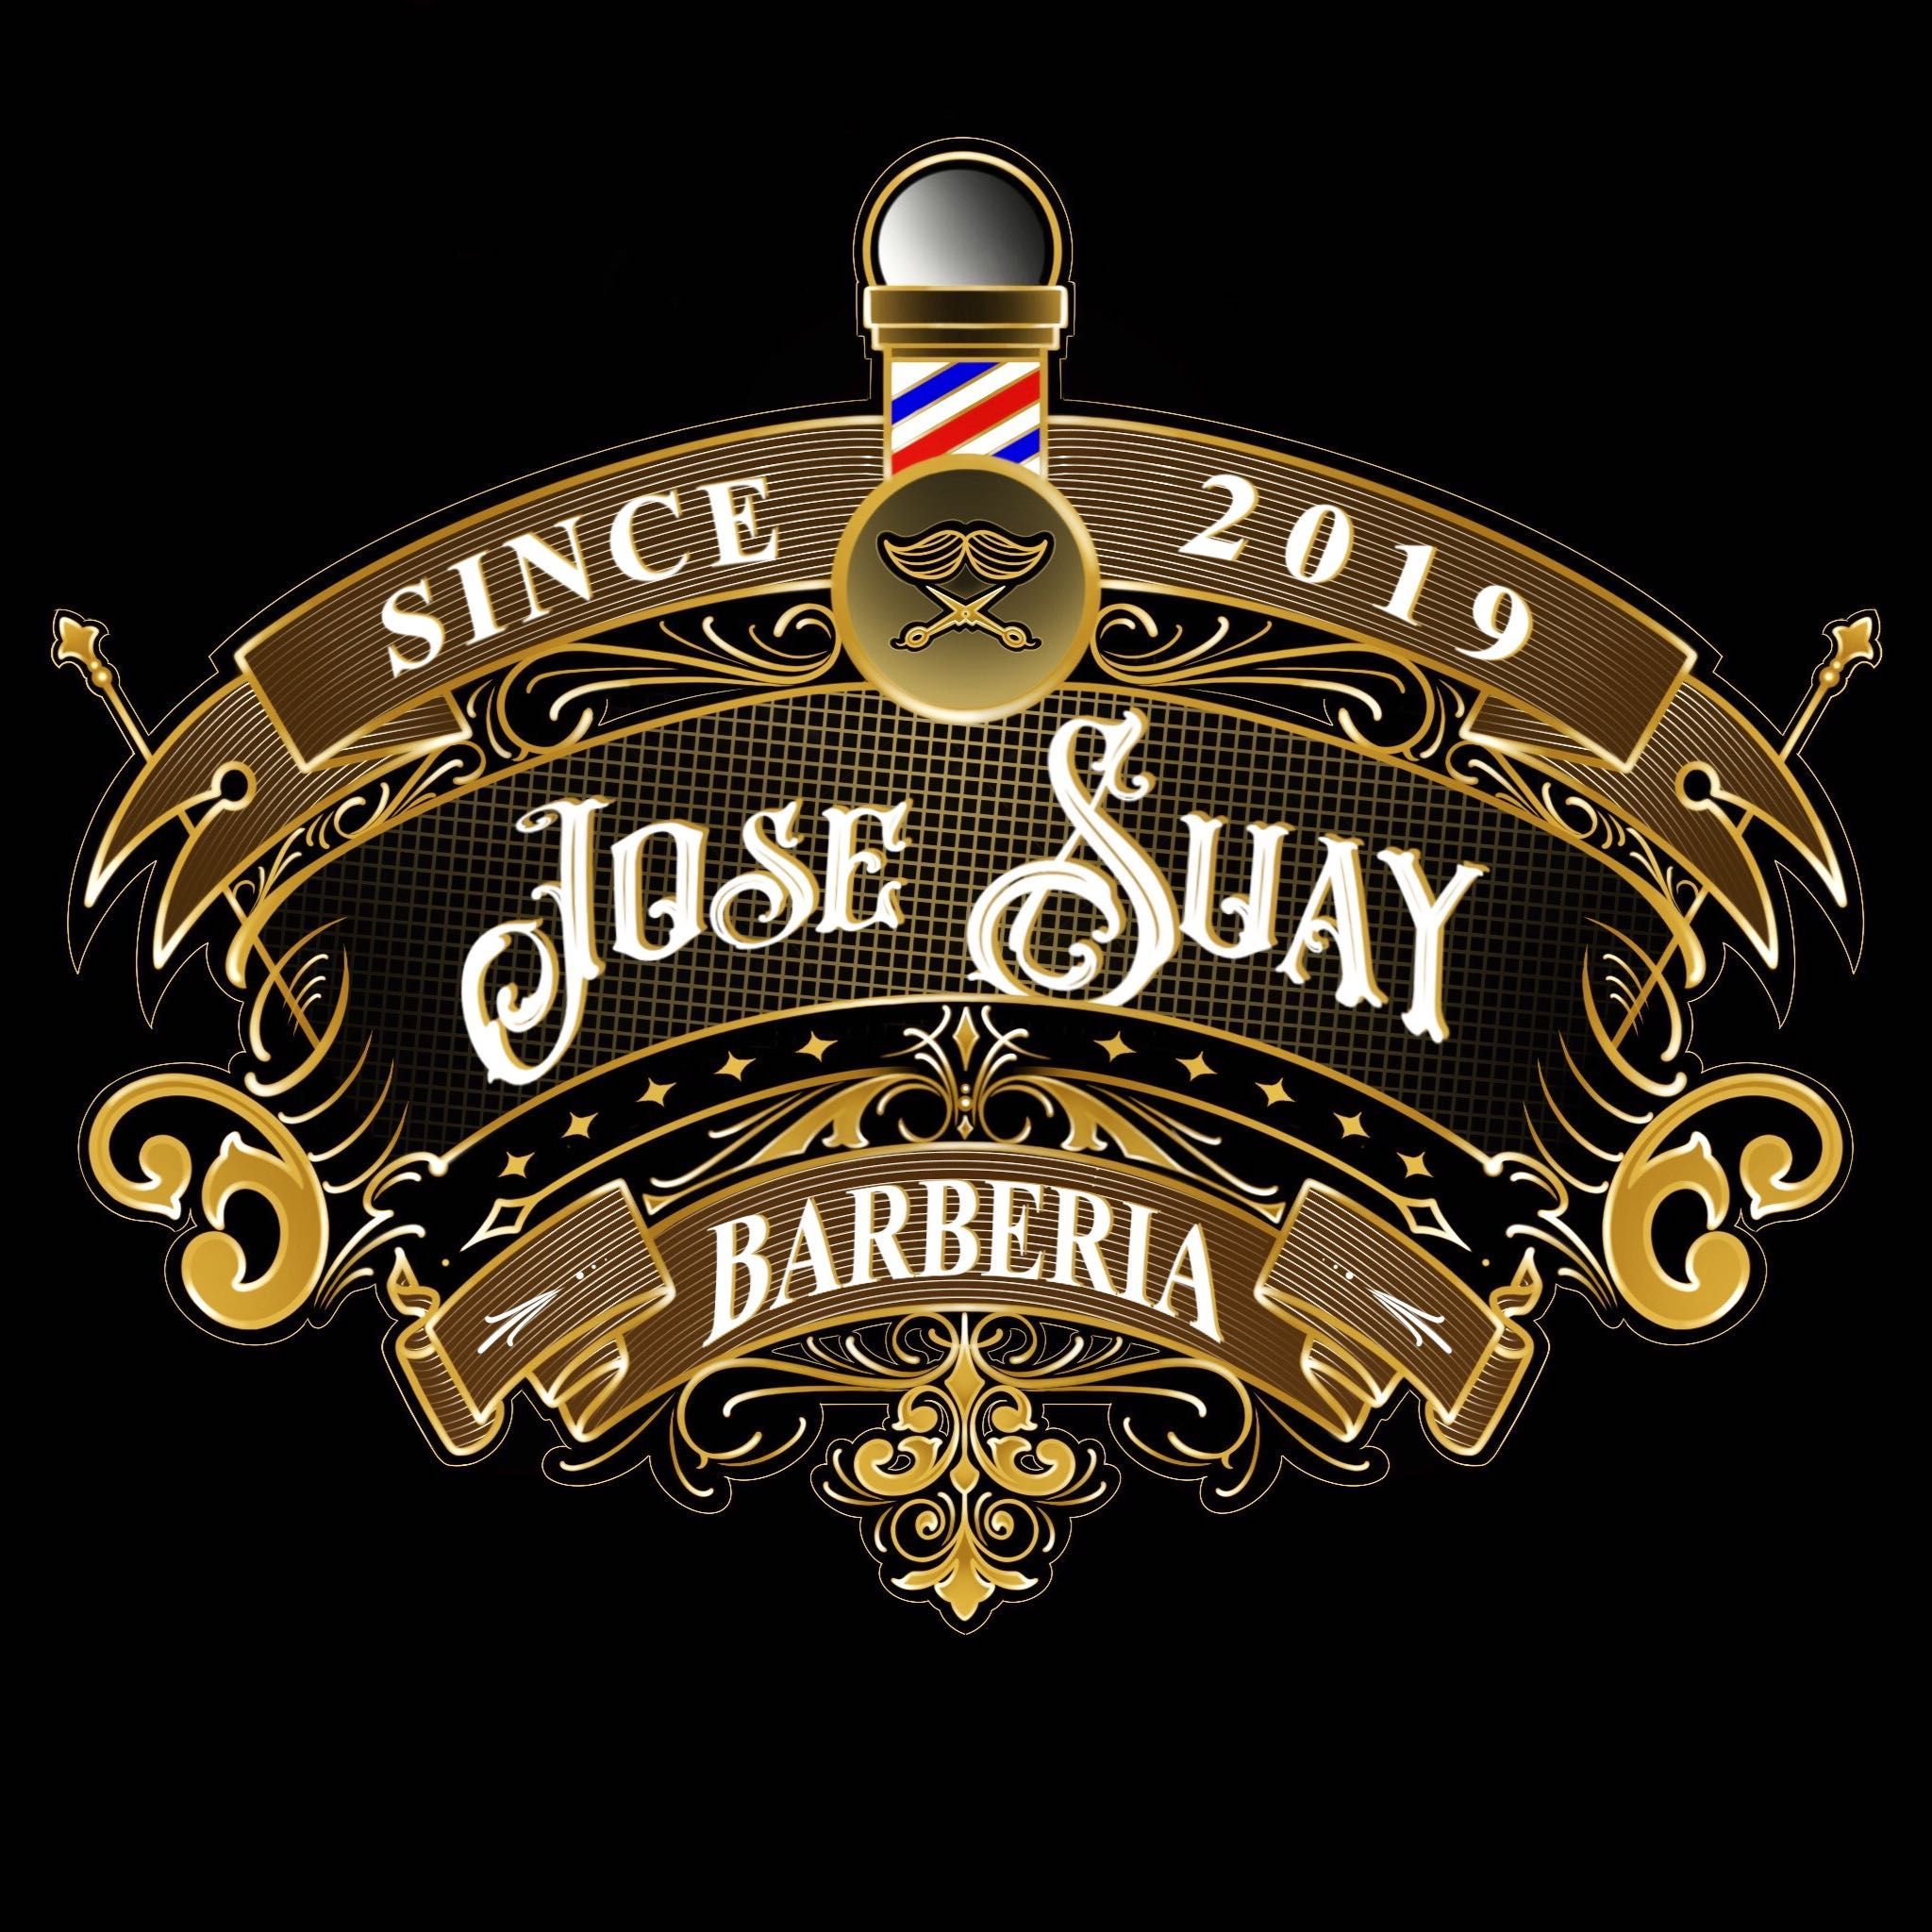 barberia Jose Suay, Calle Pintor Lluch, 24, c/pintor lluch 24 (bajo), 46131, Bonrepòs i Mirambell